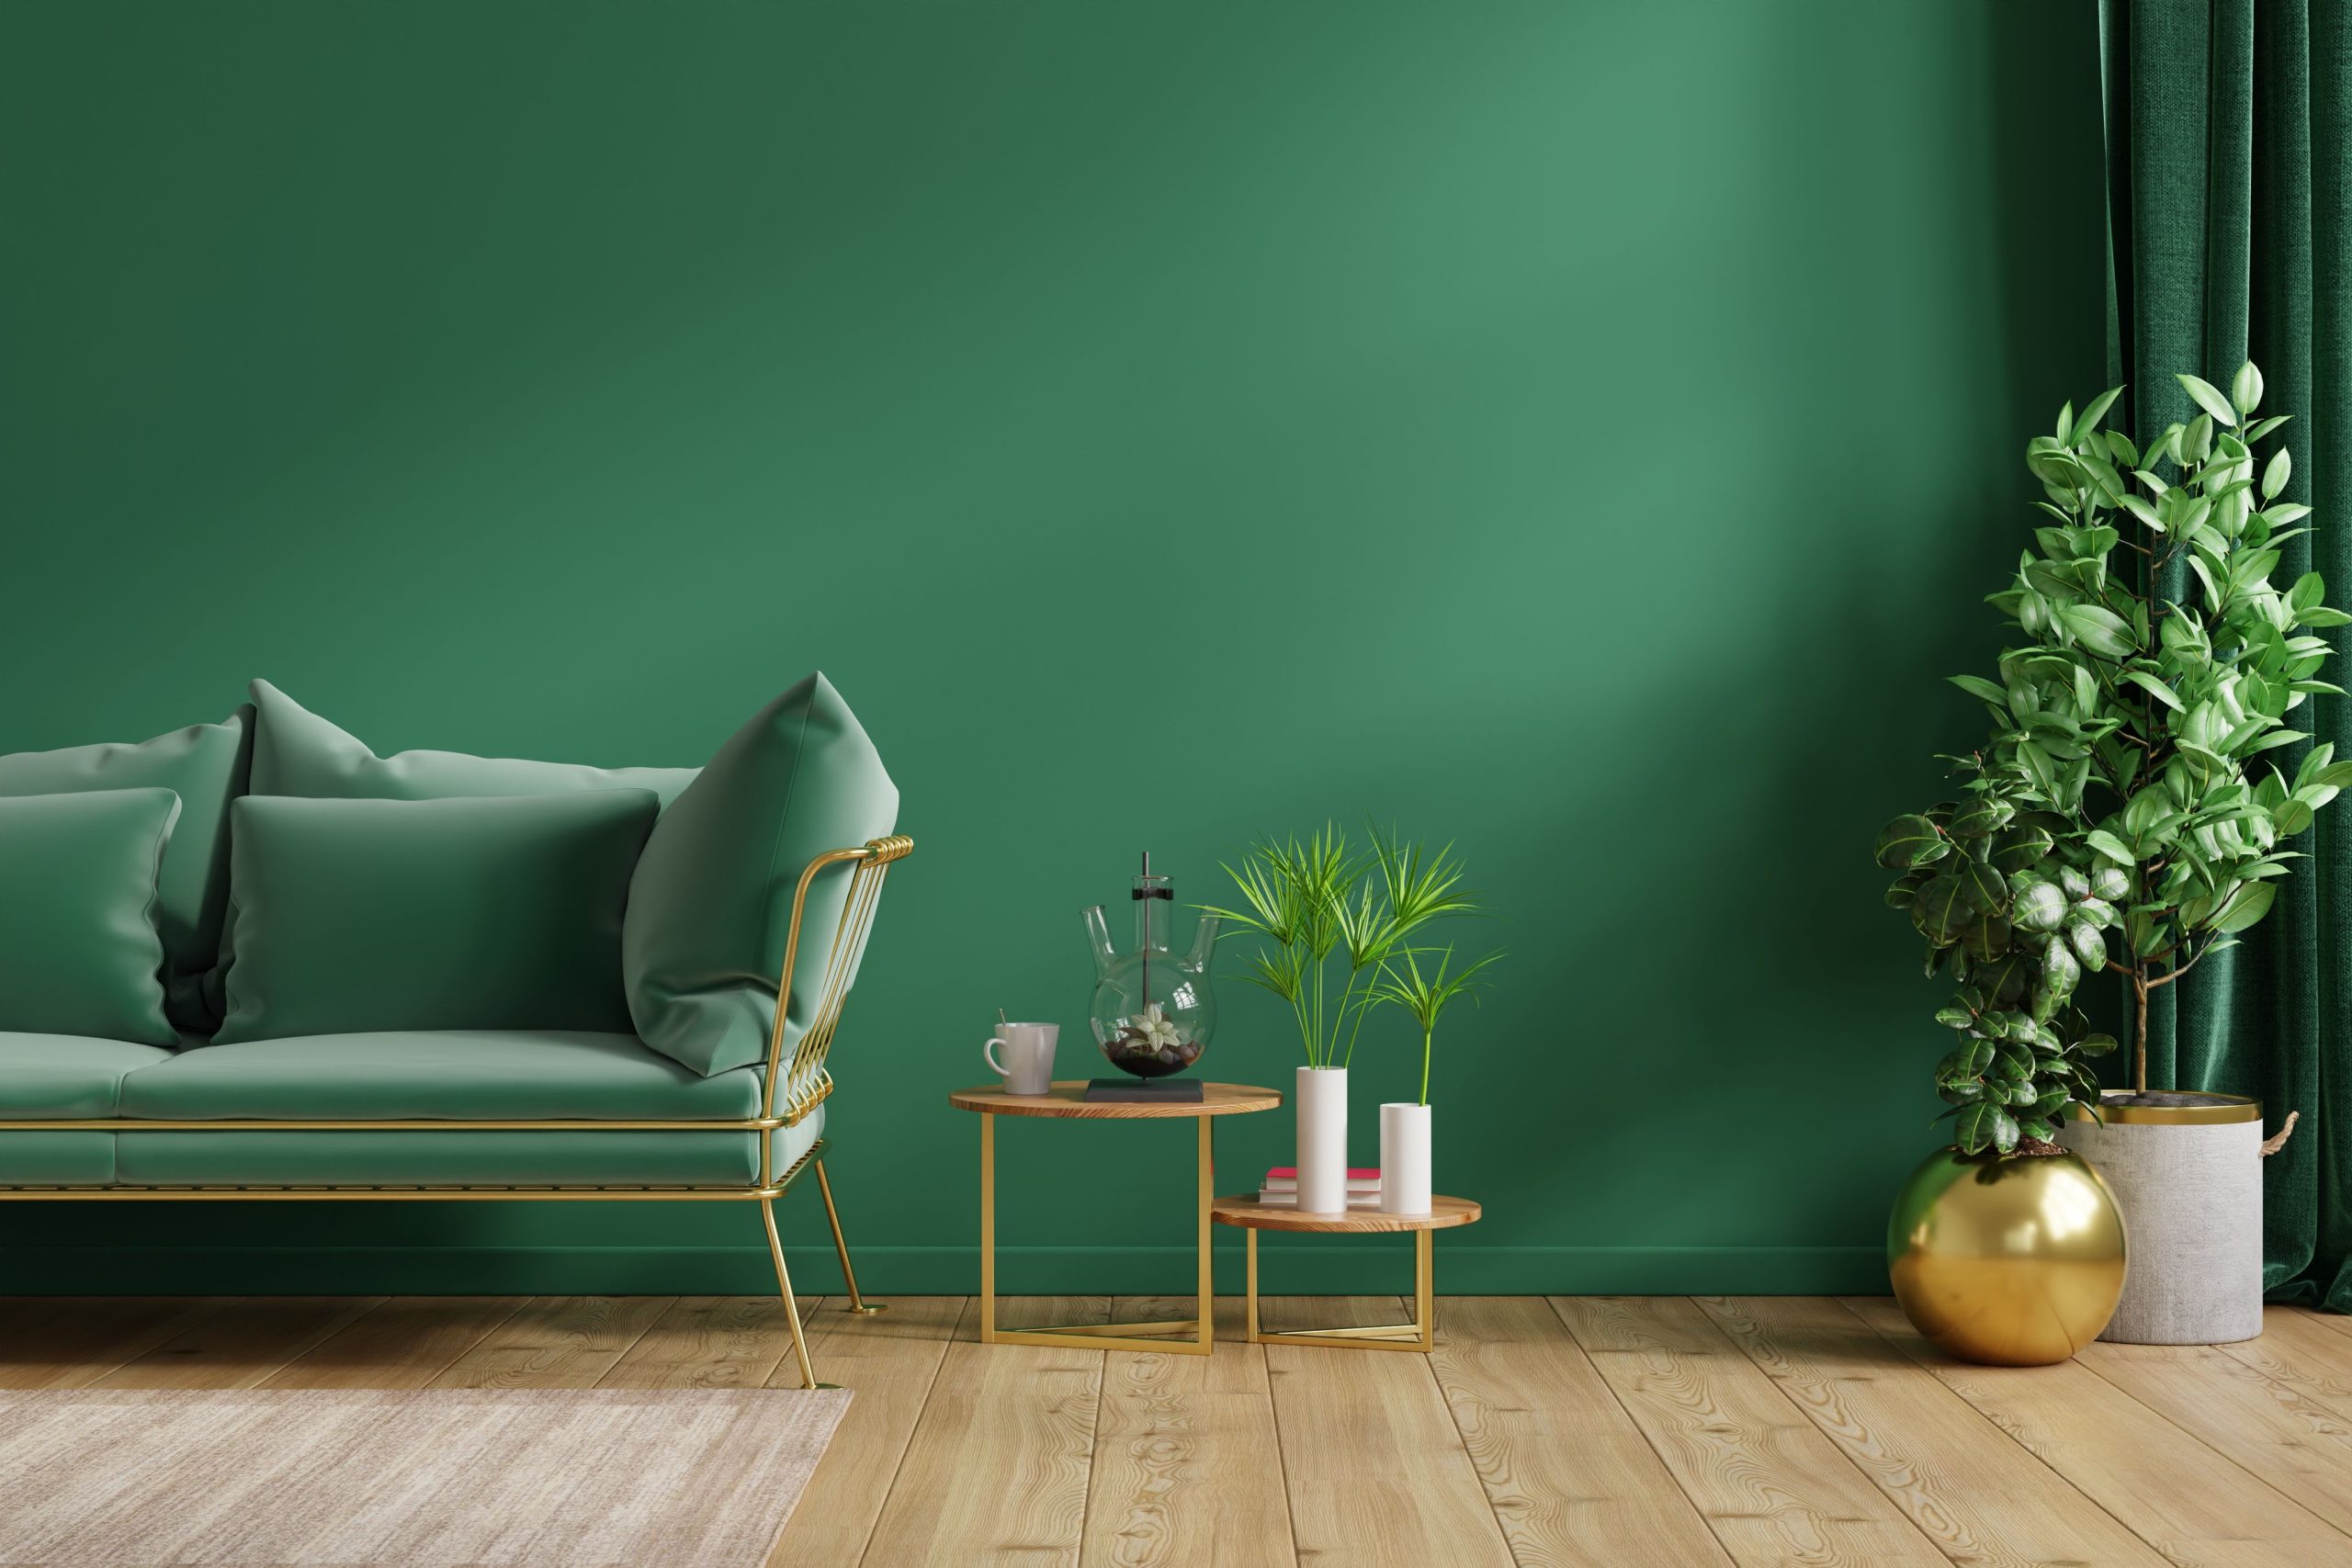 Exquisite Living Room Paint Design Ideas